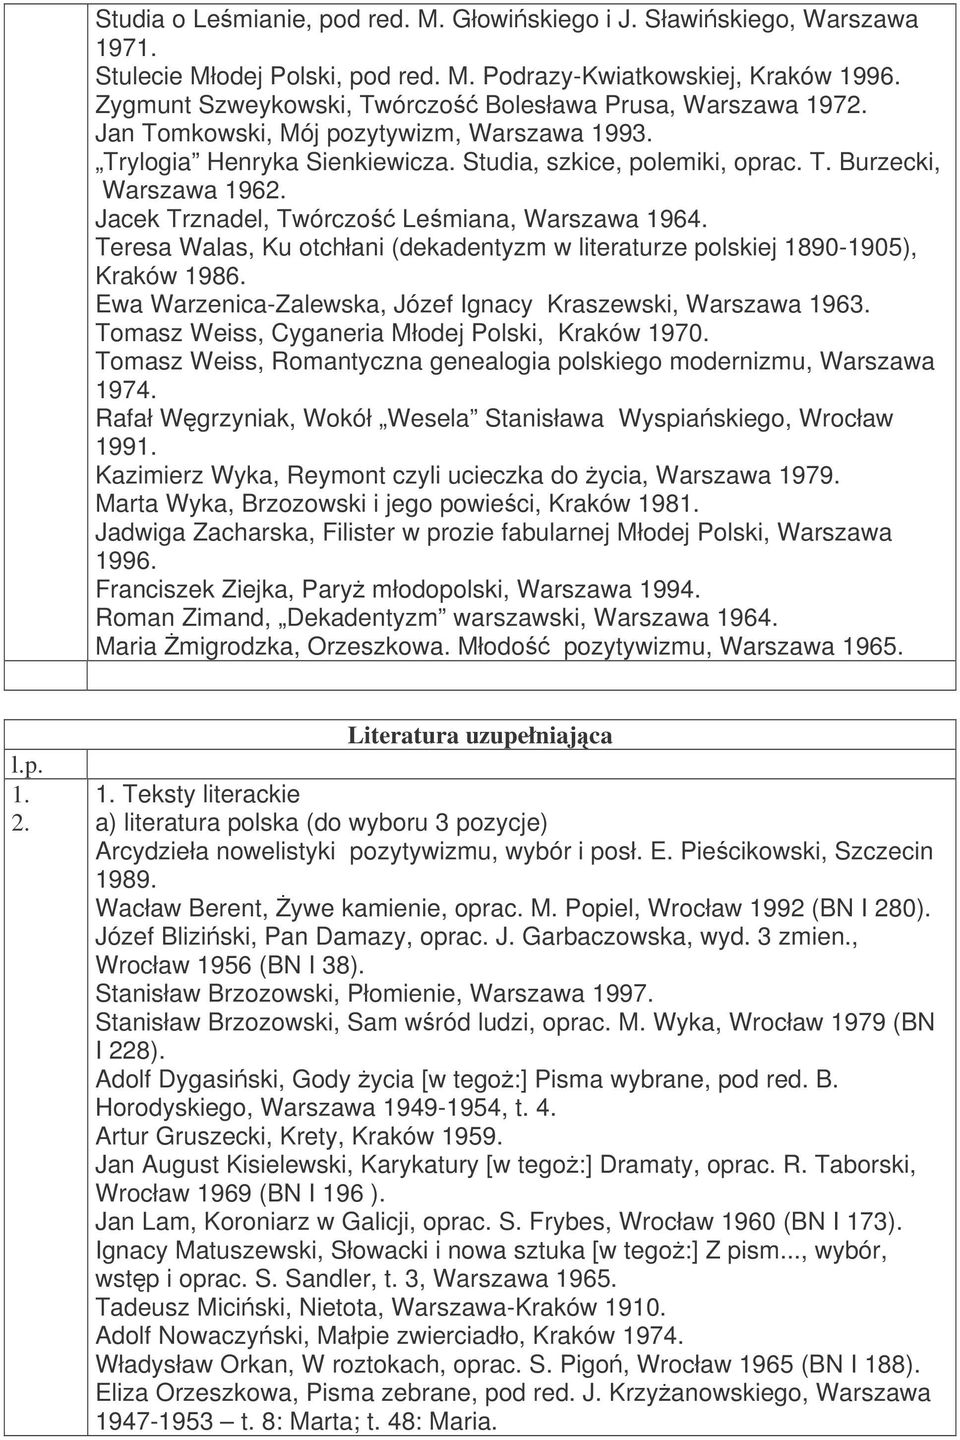 Jacek Trznadel, Twórczo Lemiana, Warszawa 1964. Teresa Walas, Ku otchłani (dekadentyzm w literaturze polskiej 1890-1905), Kraków 1986. Ewa Warzenica-Zalewska, Józef Ignacy Kraszewski, Warszawa 1963.